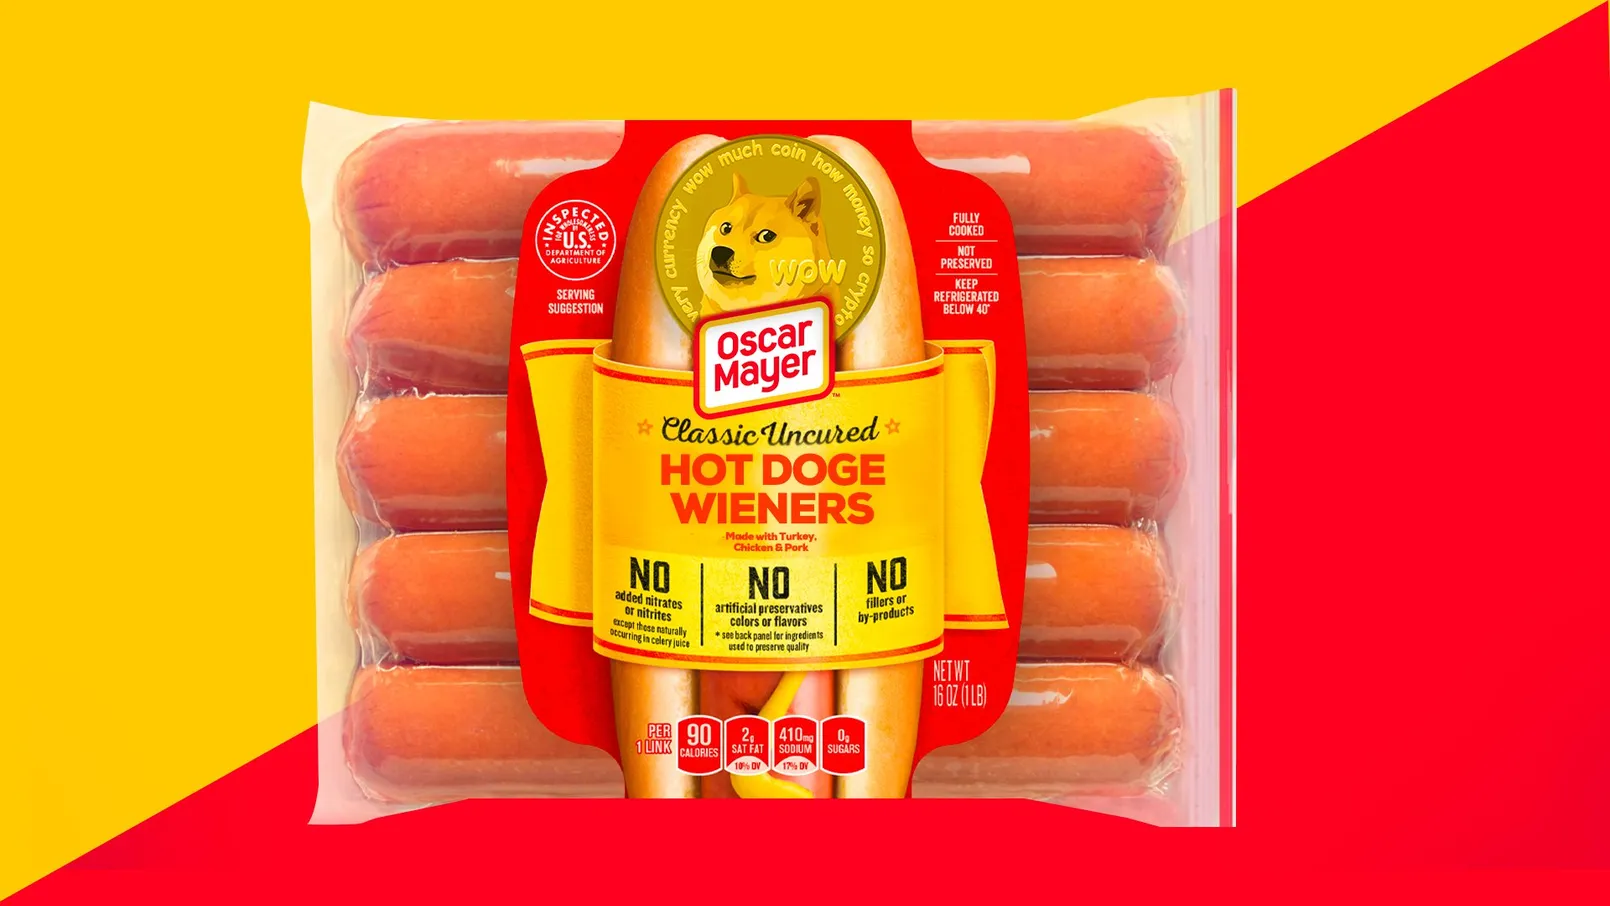 Hot Doge.jpeg